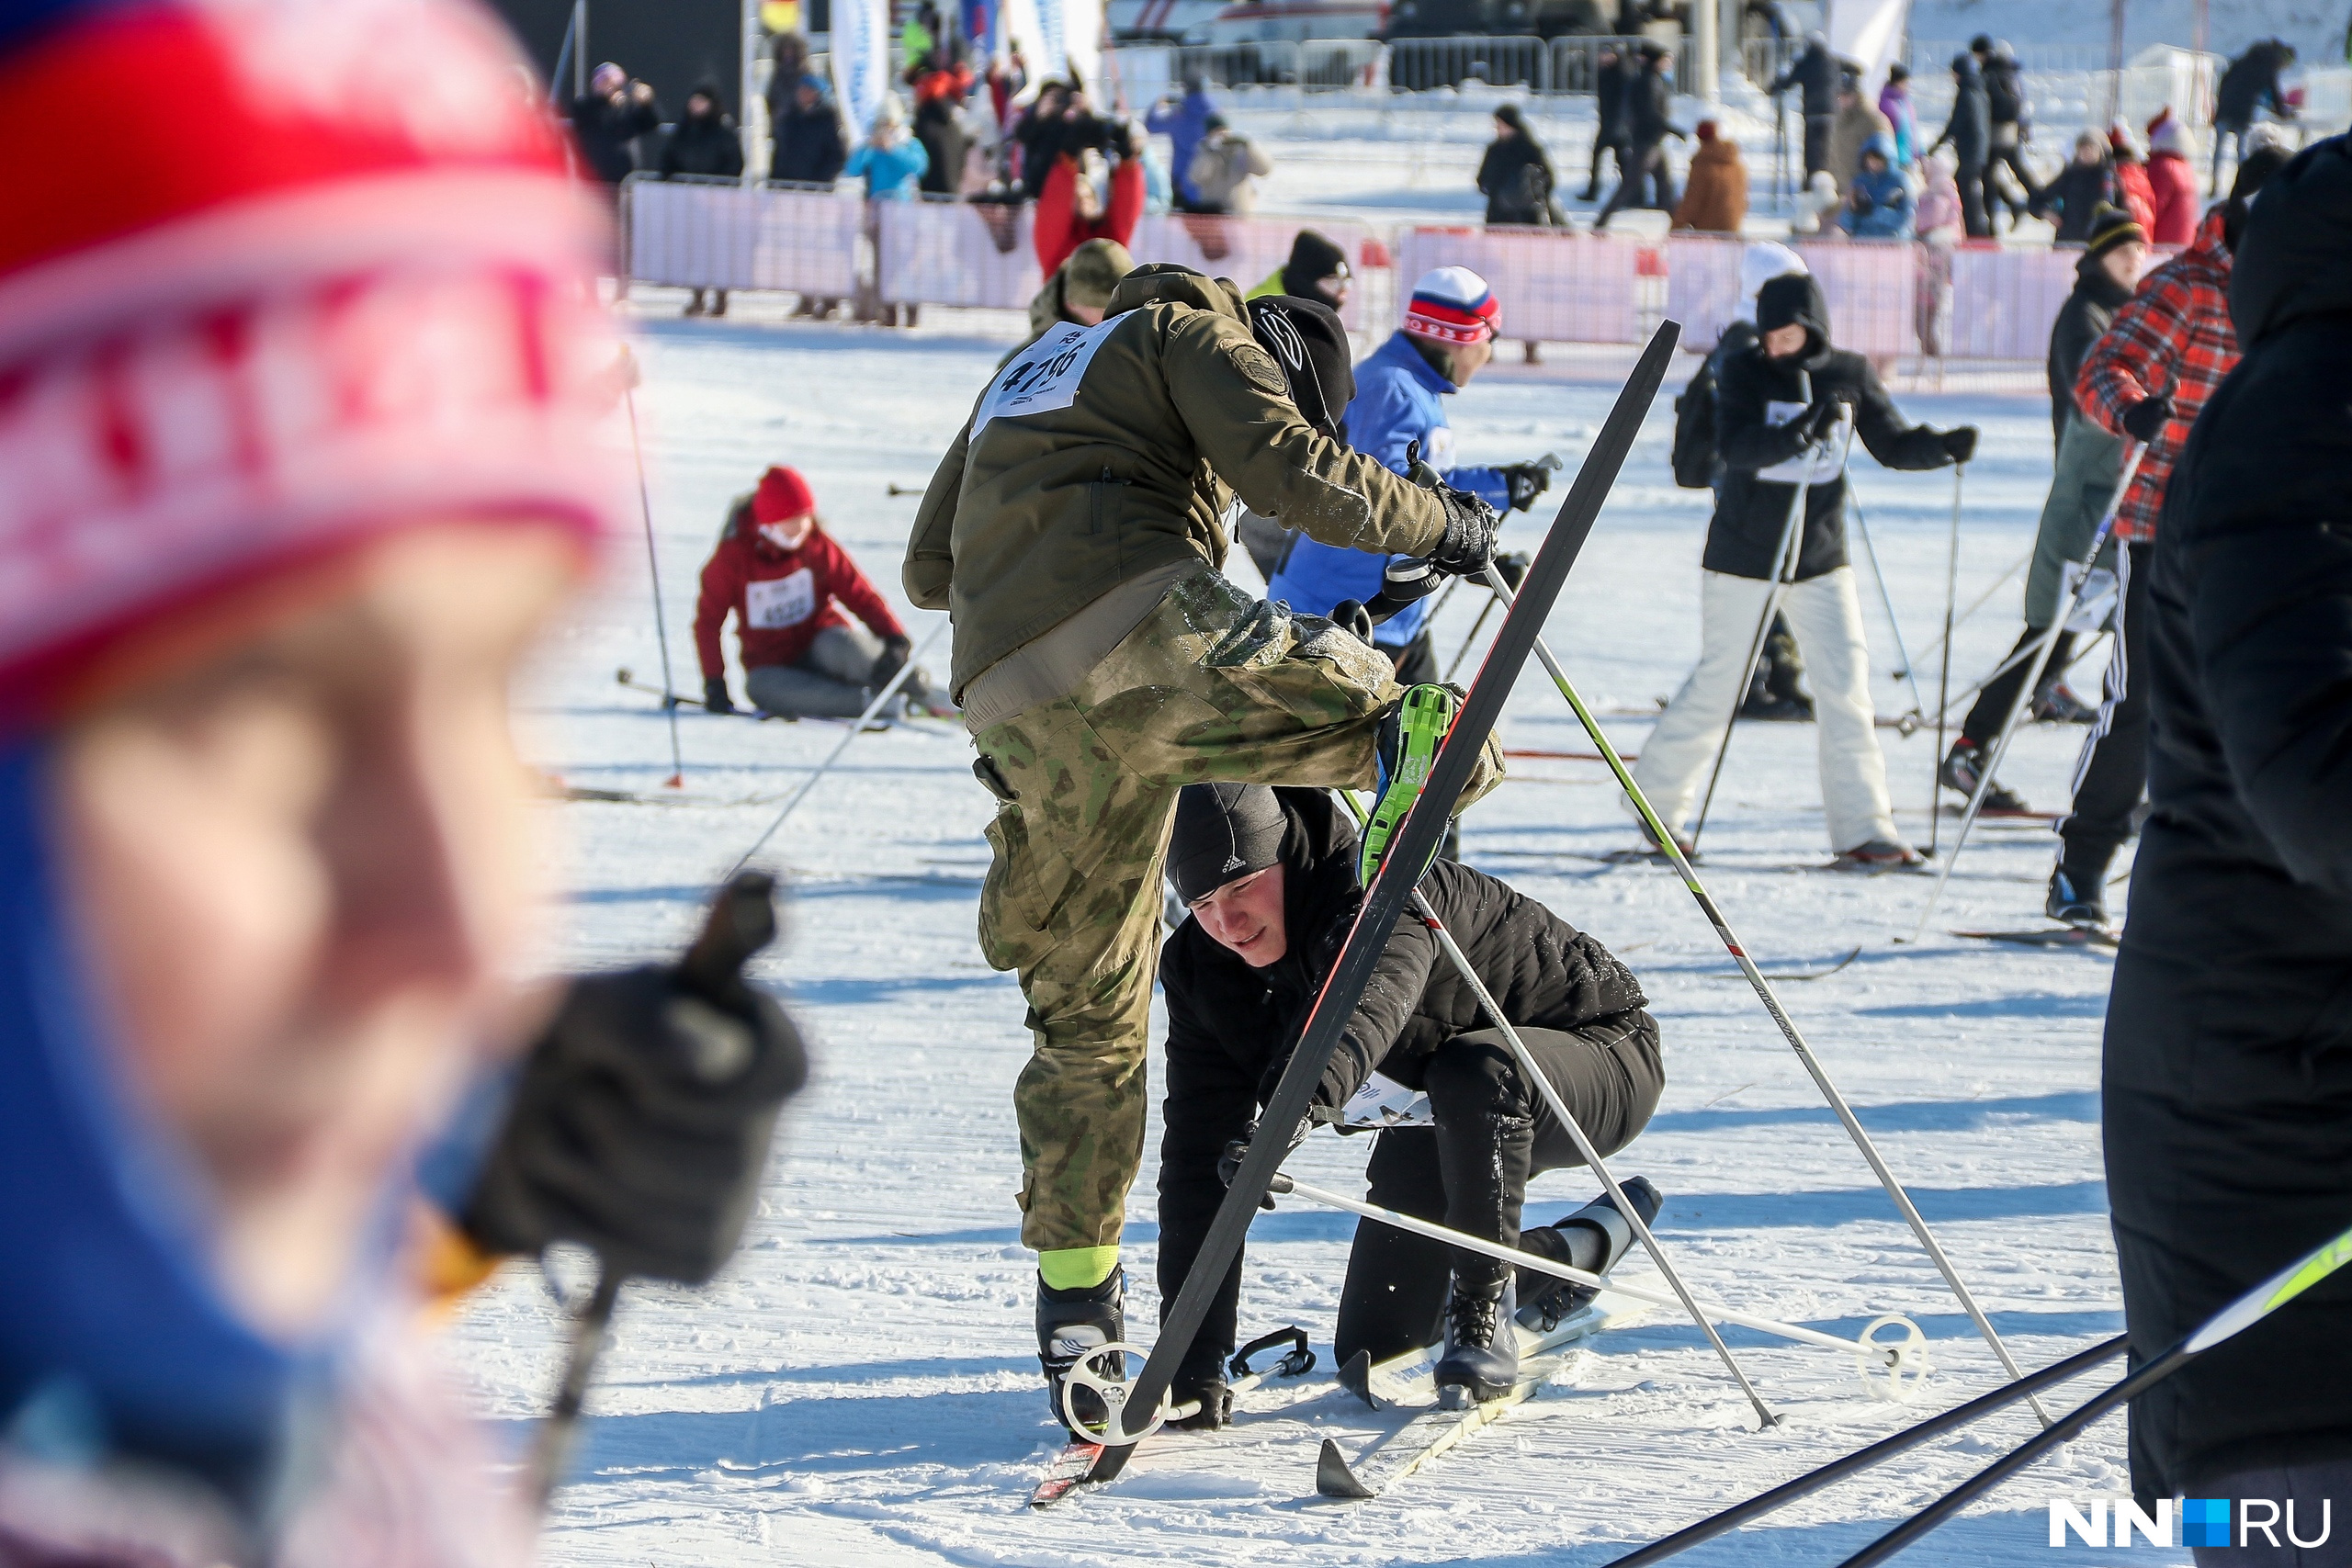 Кто-то от усталости залезал лыжами в крепления на лыжных палках. Товарищи помогали выпутаться из неловкой ситуации